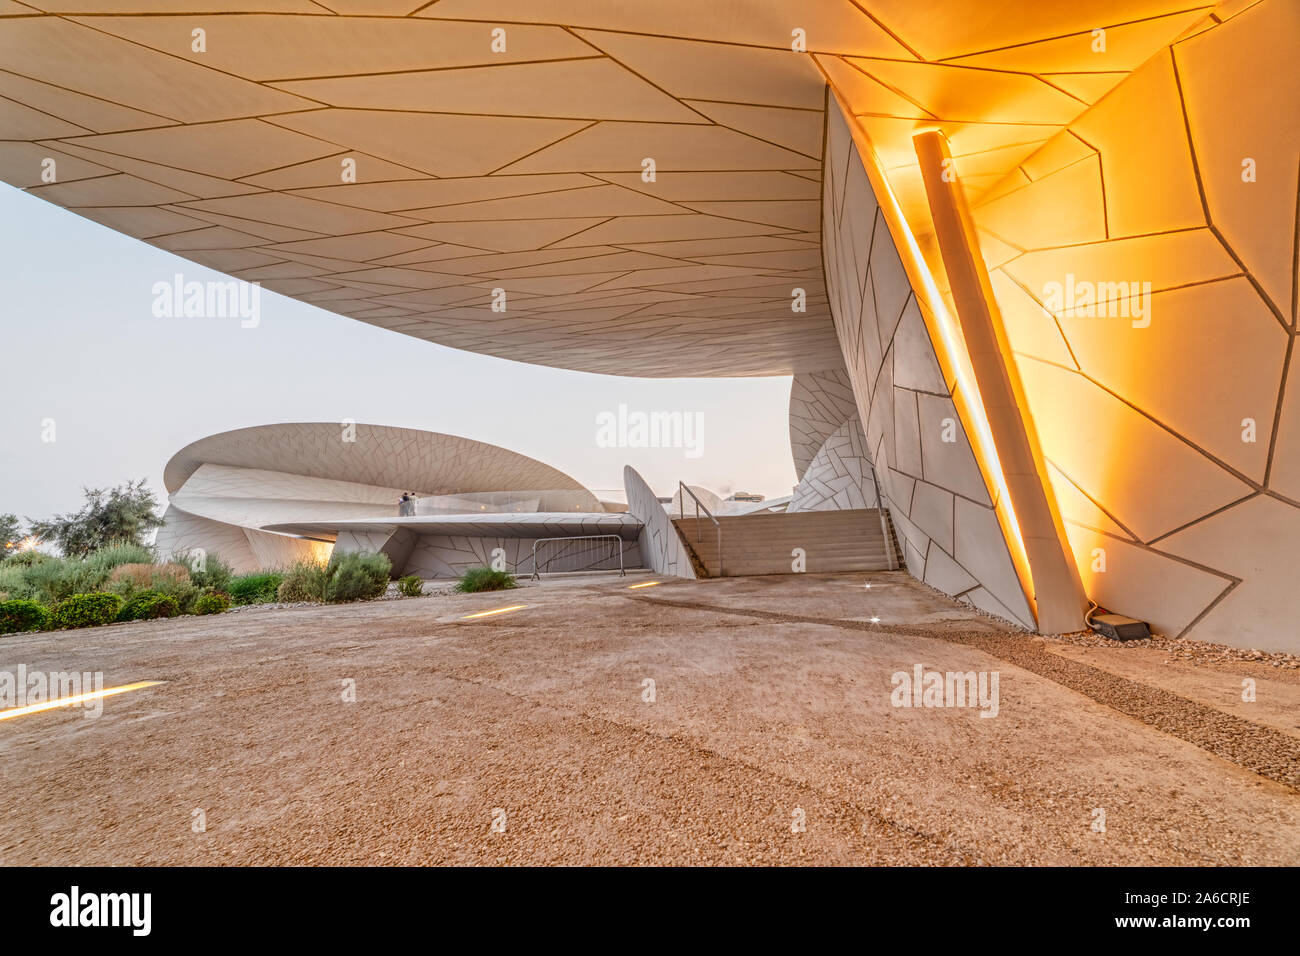 Nationalmuseum von Katar (Wüstenrose) In Doha Katar Außenansicht bei Dämmerung Stockfoto